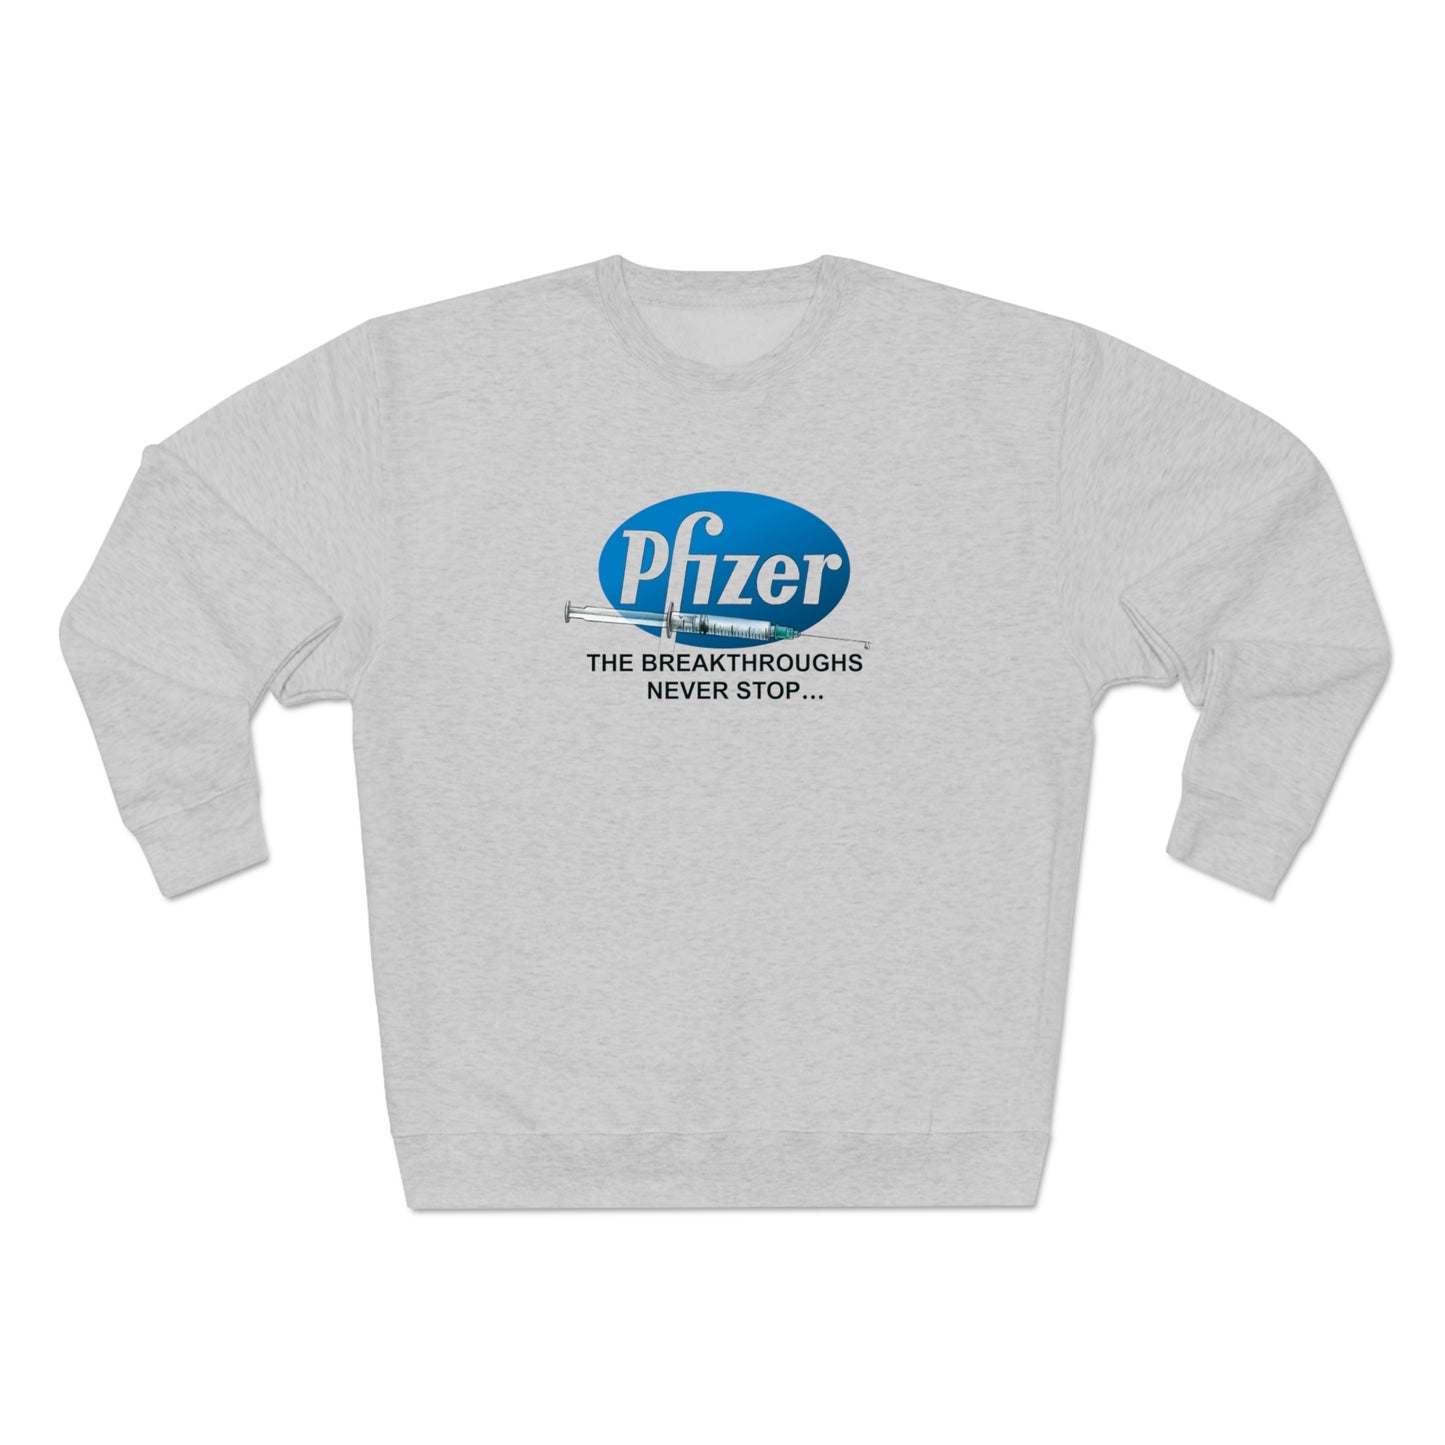 Pfizer, The Breakthroughs Never Stop Sweatshirt - Unisex